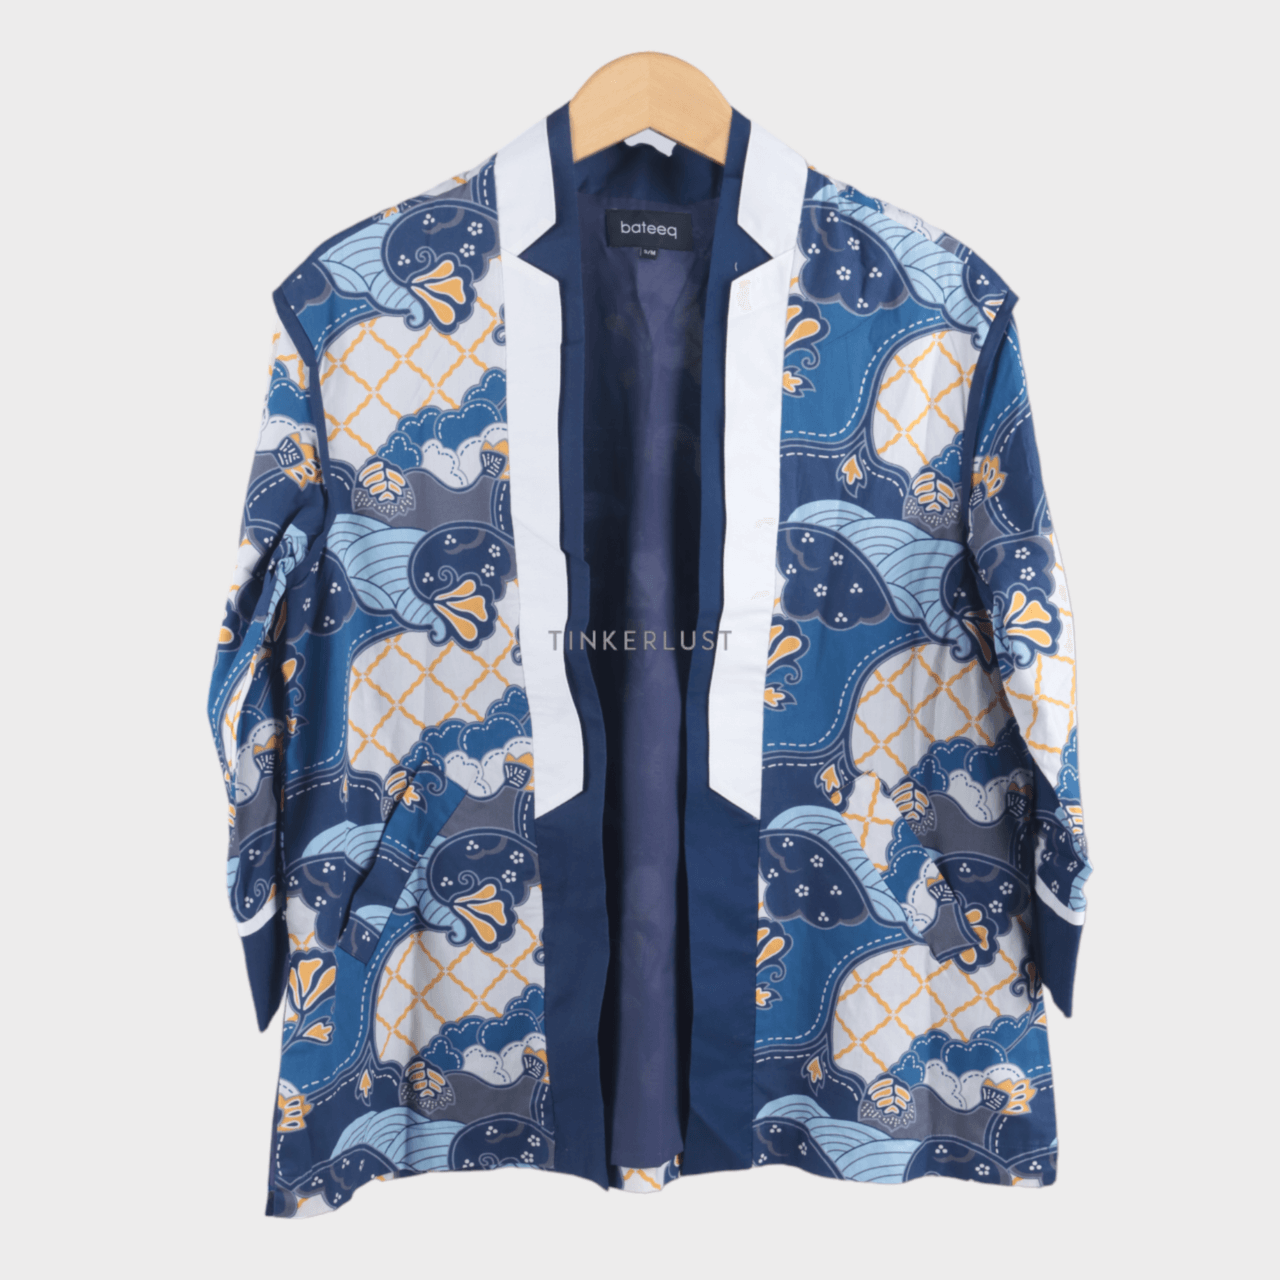 bateeq Multicolour Kimono